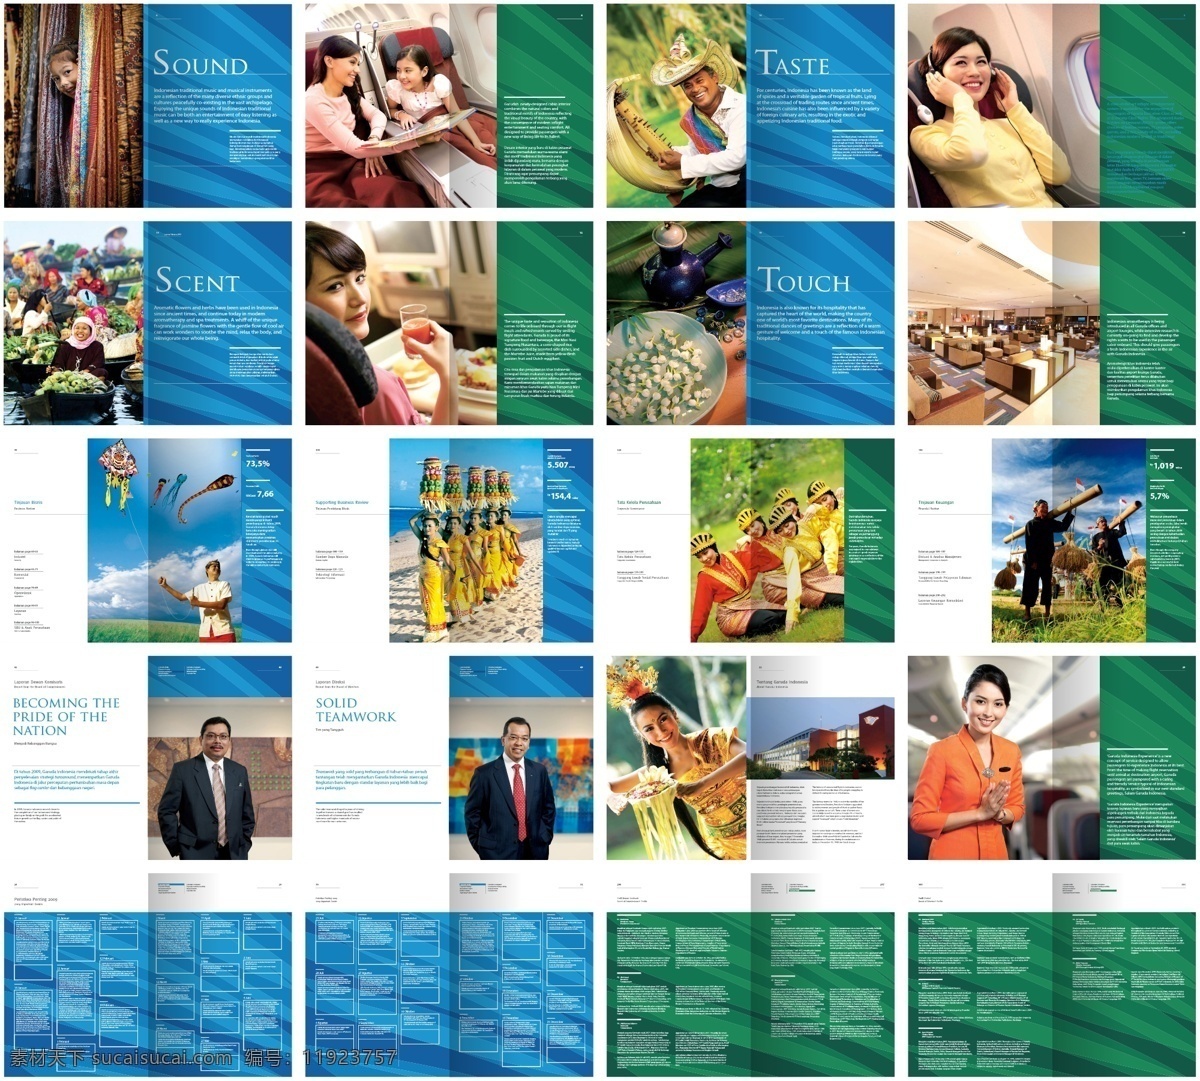 航空画册 航空科技画册 蓝色画册 绿色画册 航空设计 马来航空 马来西亚航空 航空画册设计 航空服务 画册设计 矢量